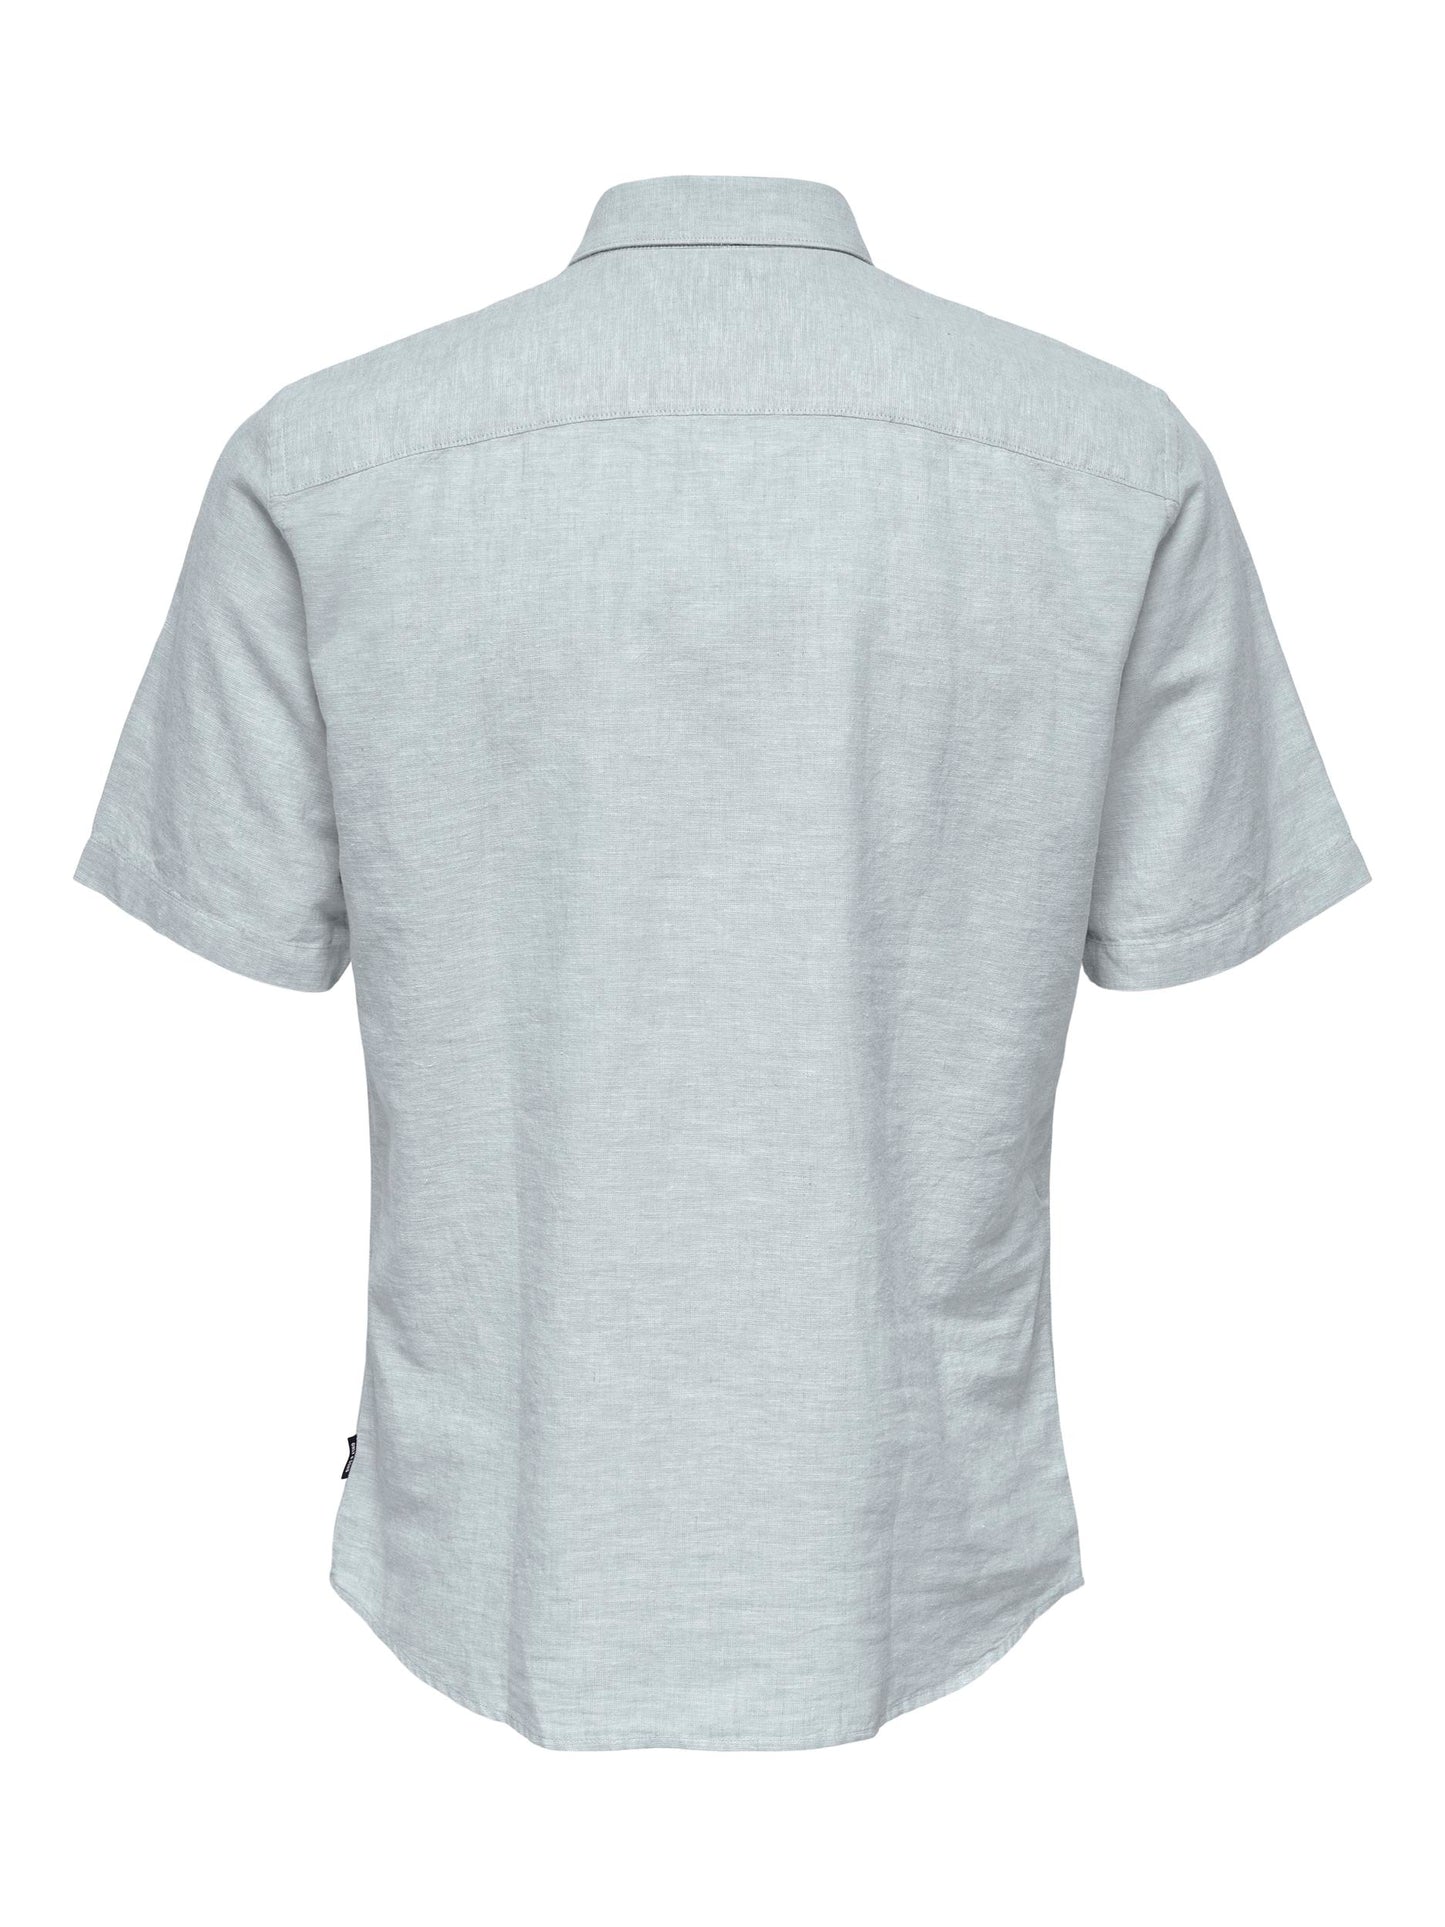 Caiden Solid Linen Shirt